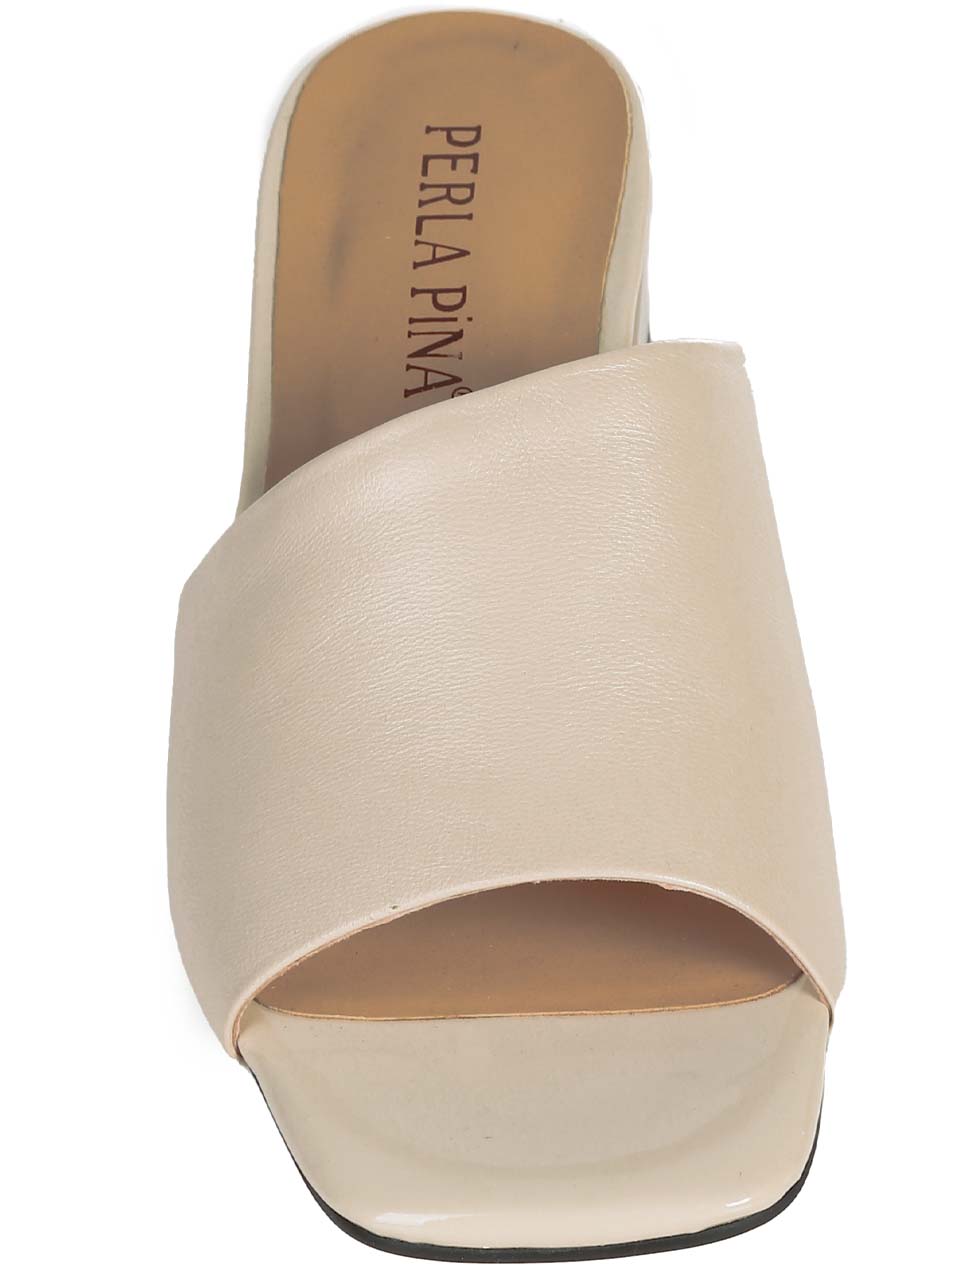 Ежедневни дамски чехли от естествена кожа в бежово T27-3 off white